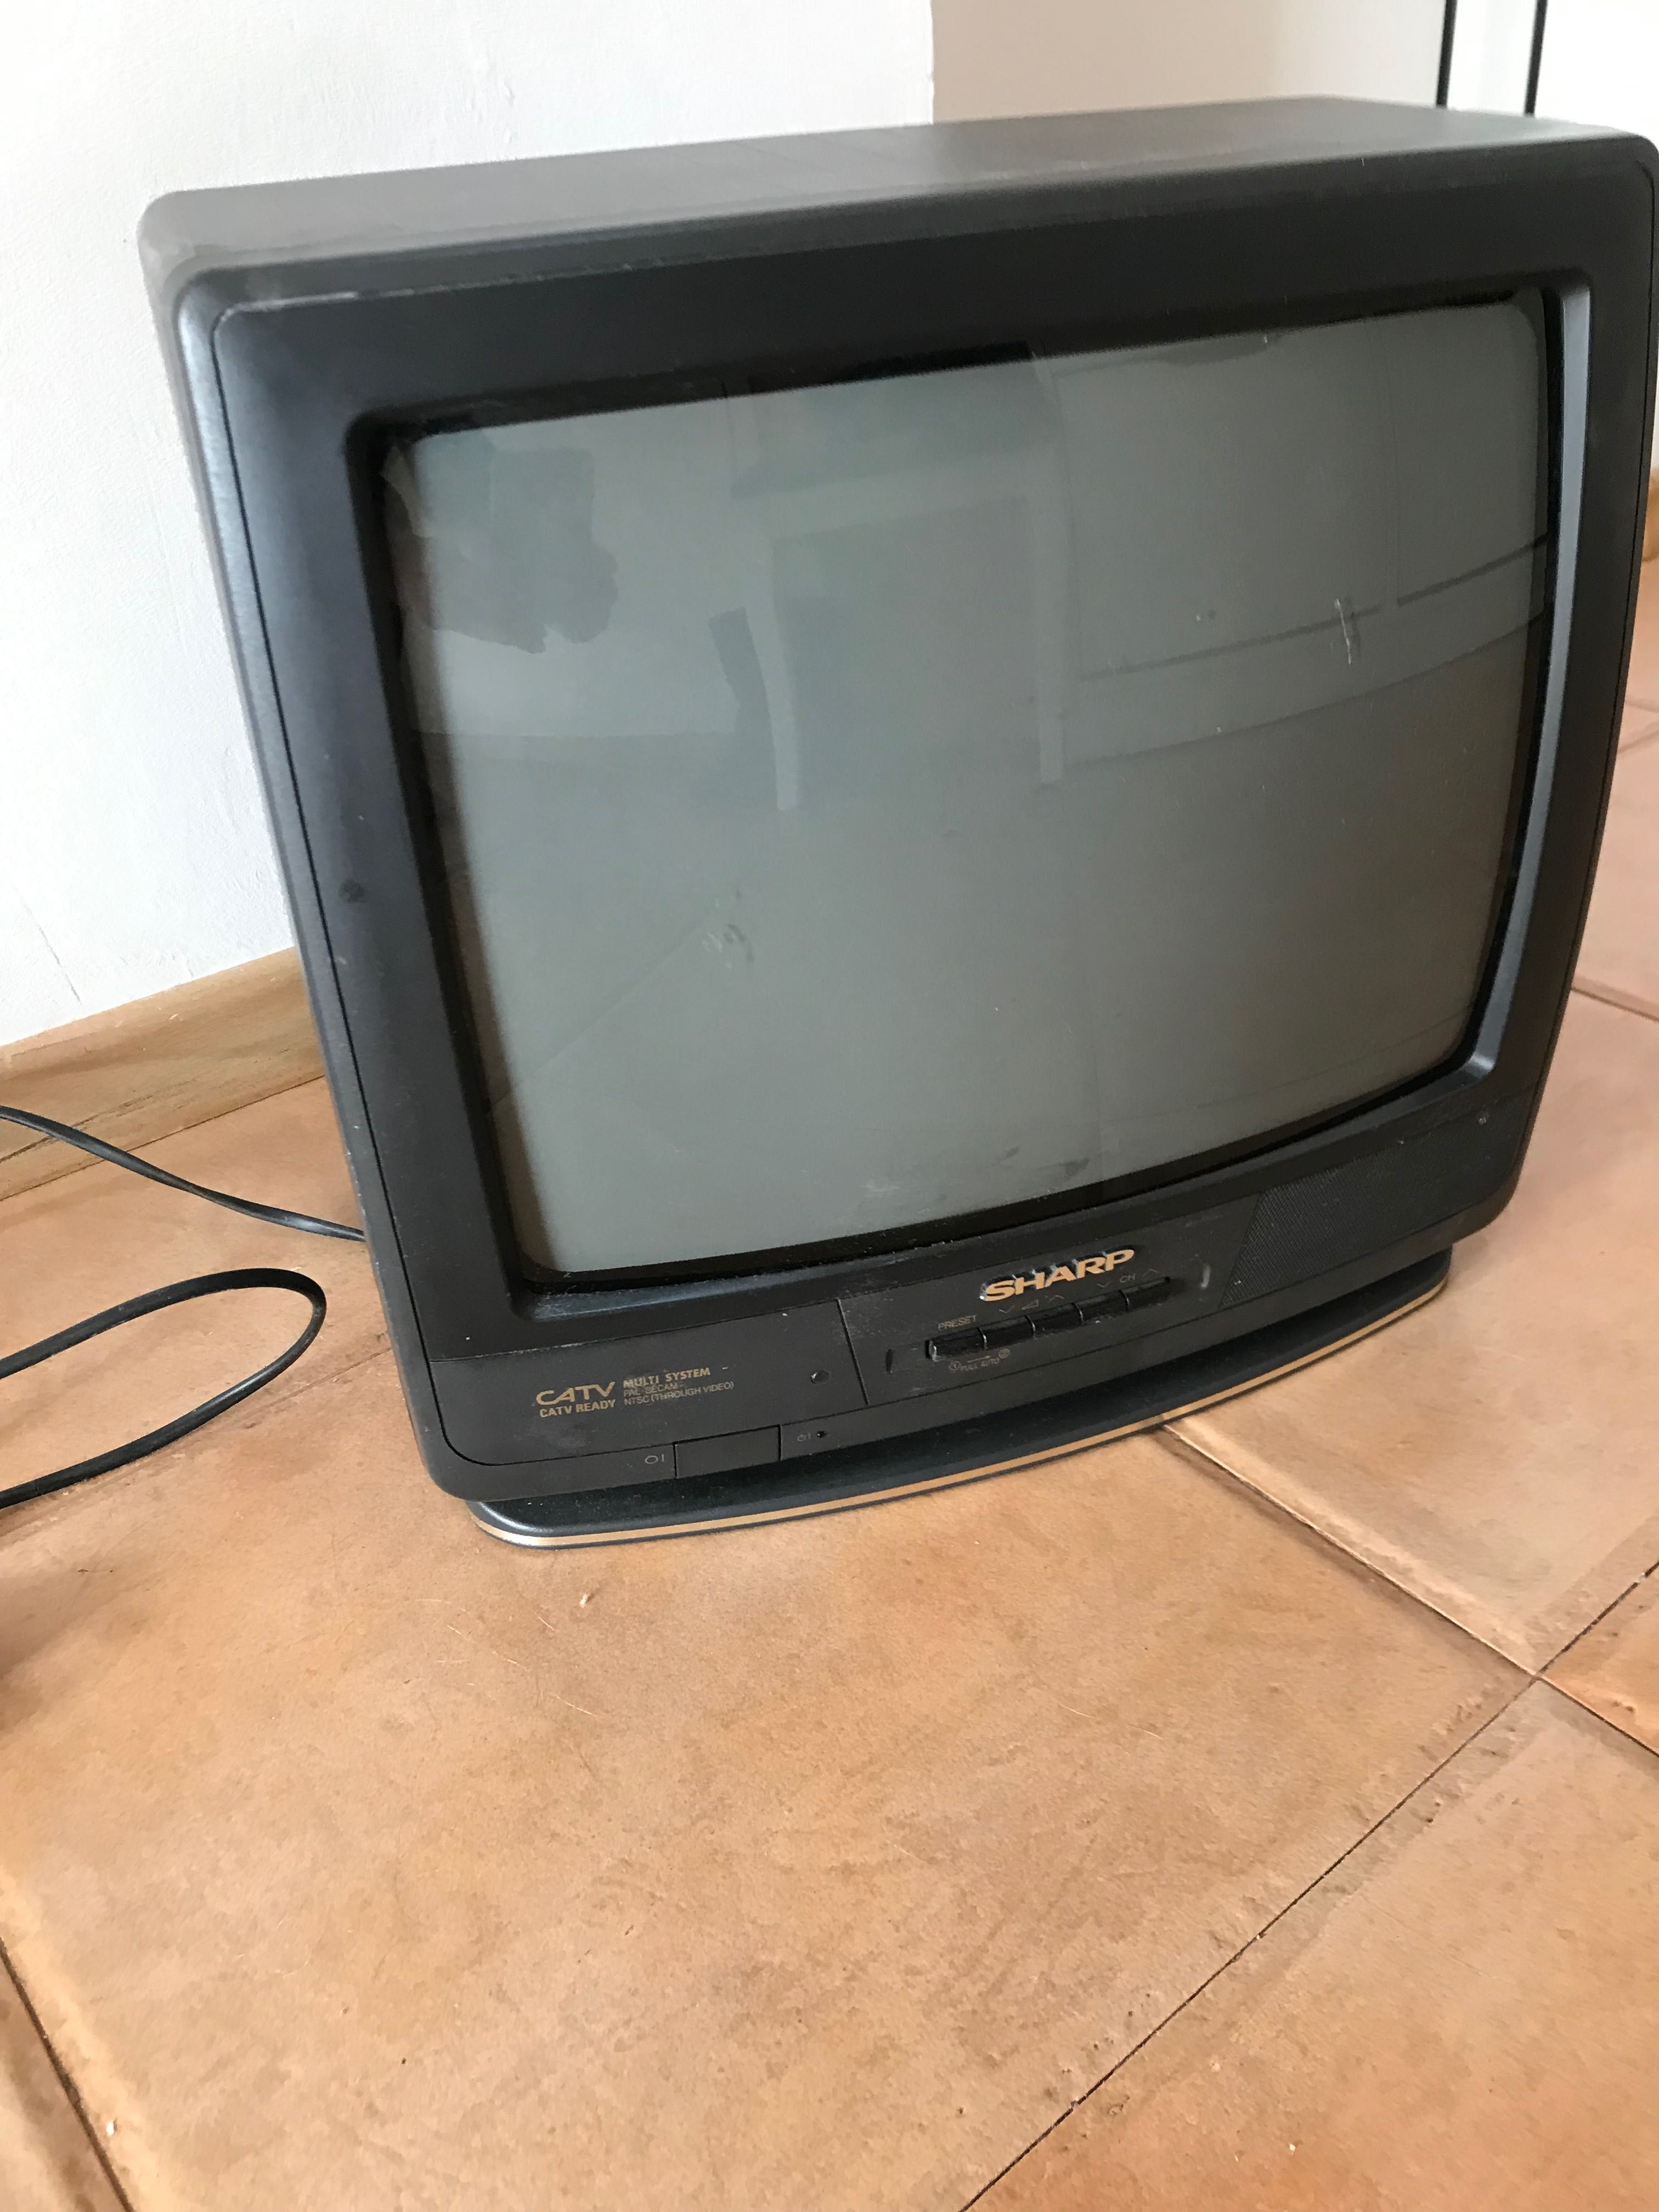 Телевизор Панасоник -20 инча, работещ цена 40лв предложи цена